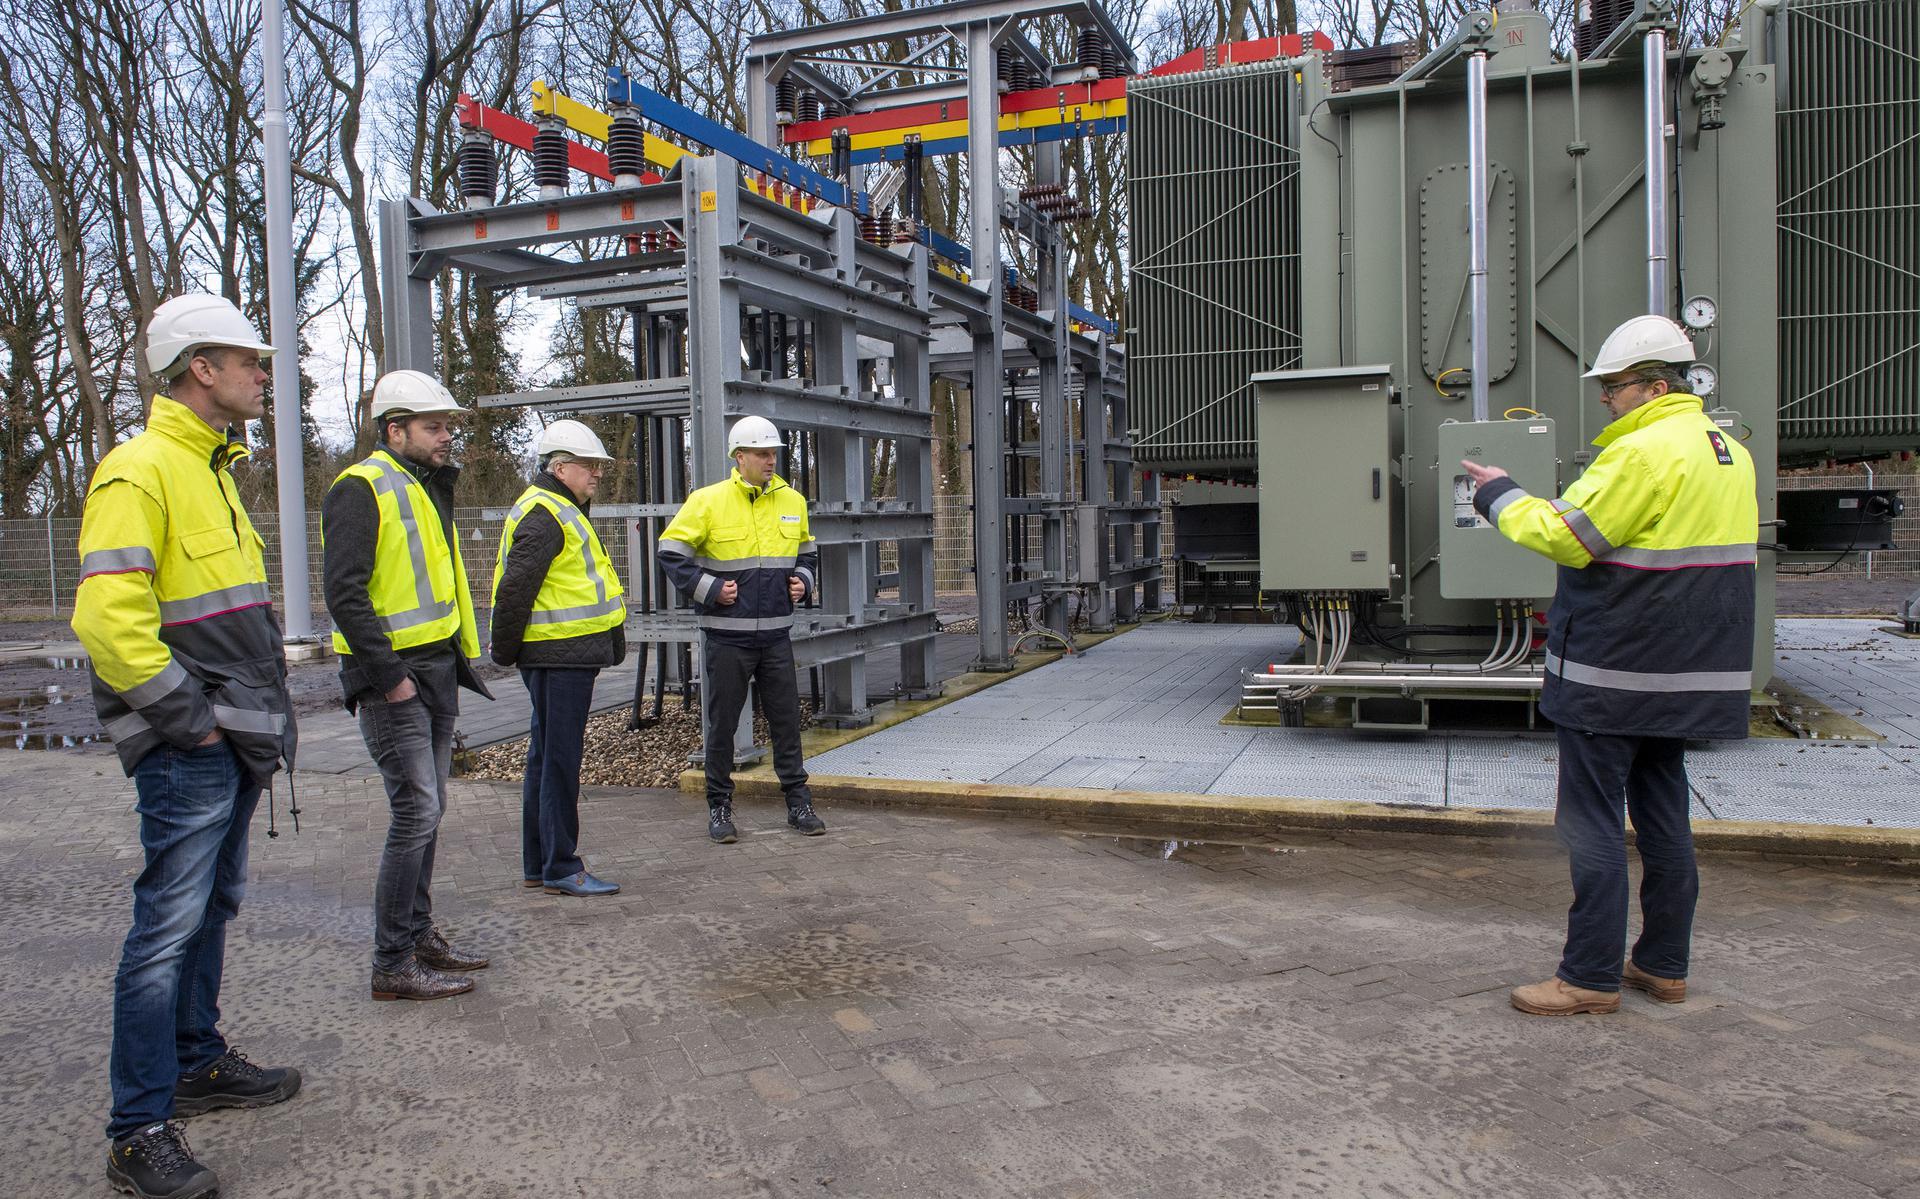 Provincie Drenthe wil er 'alles doen' om bedrijven die geen aansluiting krijgen op elektriciteitsnetwerk te helpen en hoogt subsidiebudget op - Dagblad van het Noorden